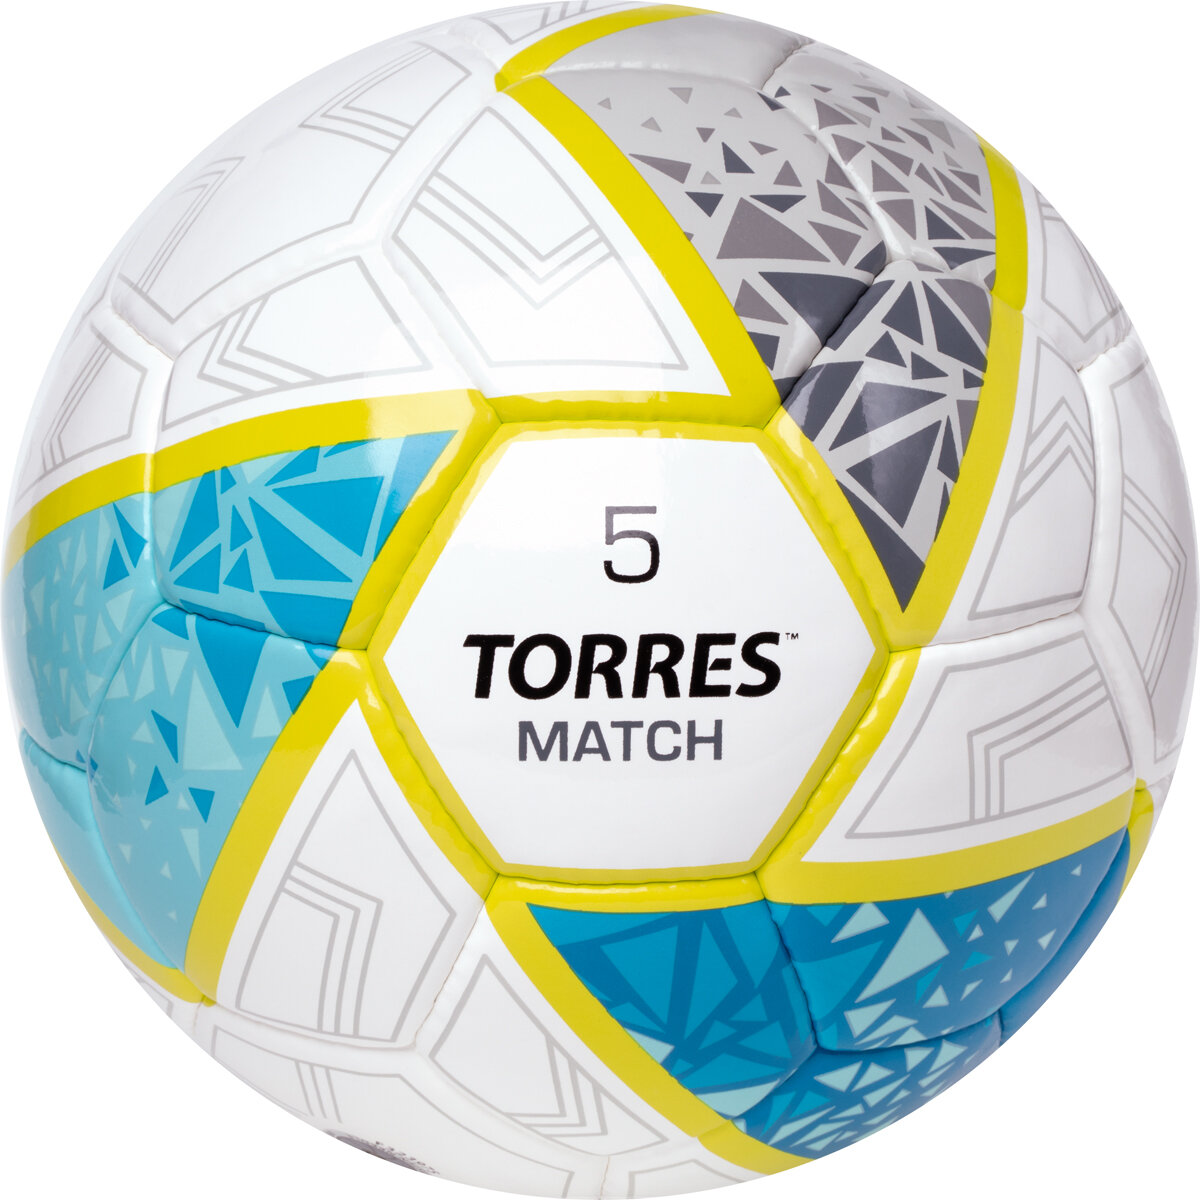 Мяч футбольный TORRES Match NEW, размер 5, поставляется накаченным